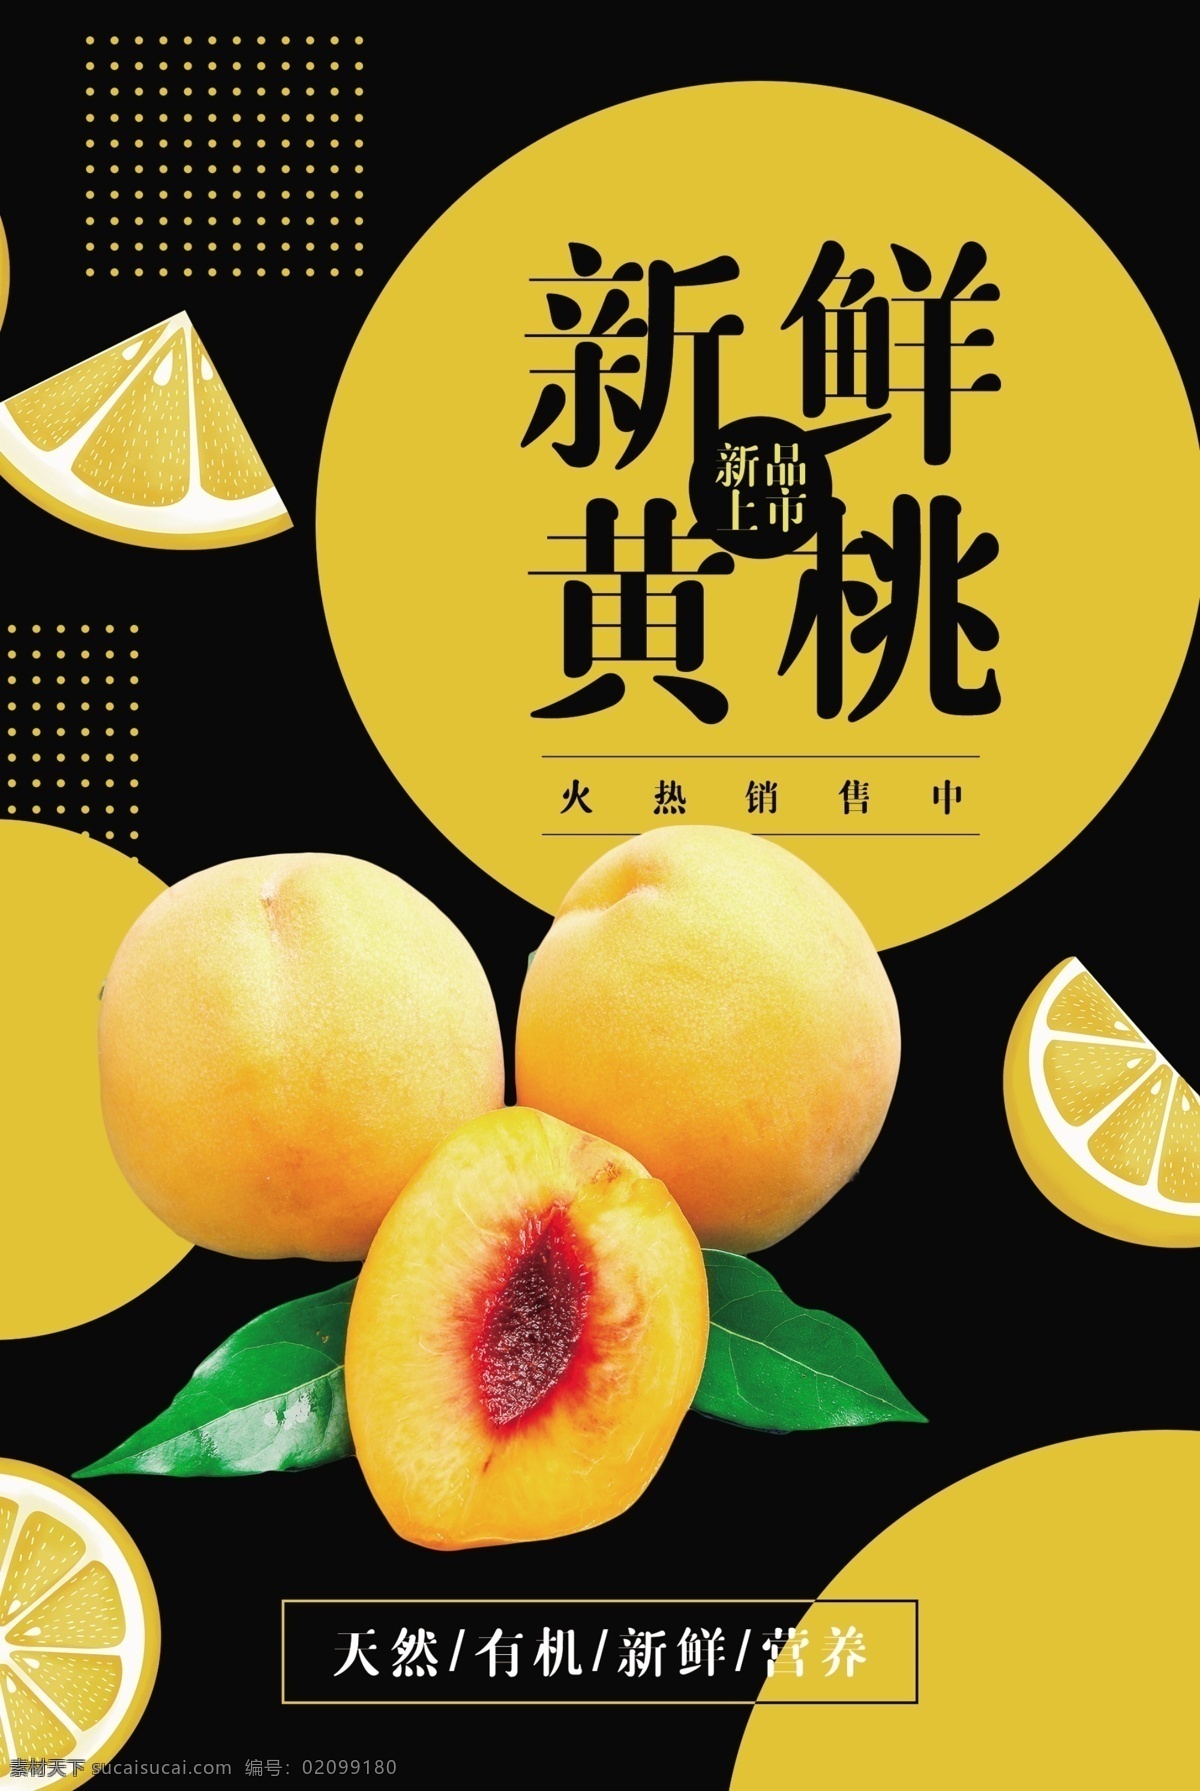 新鲜 黄桃 水果 活动 海报 素材图片 新鲜黄桃 餐饮美食 类